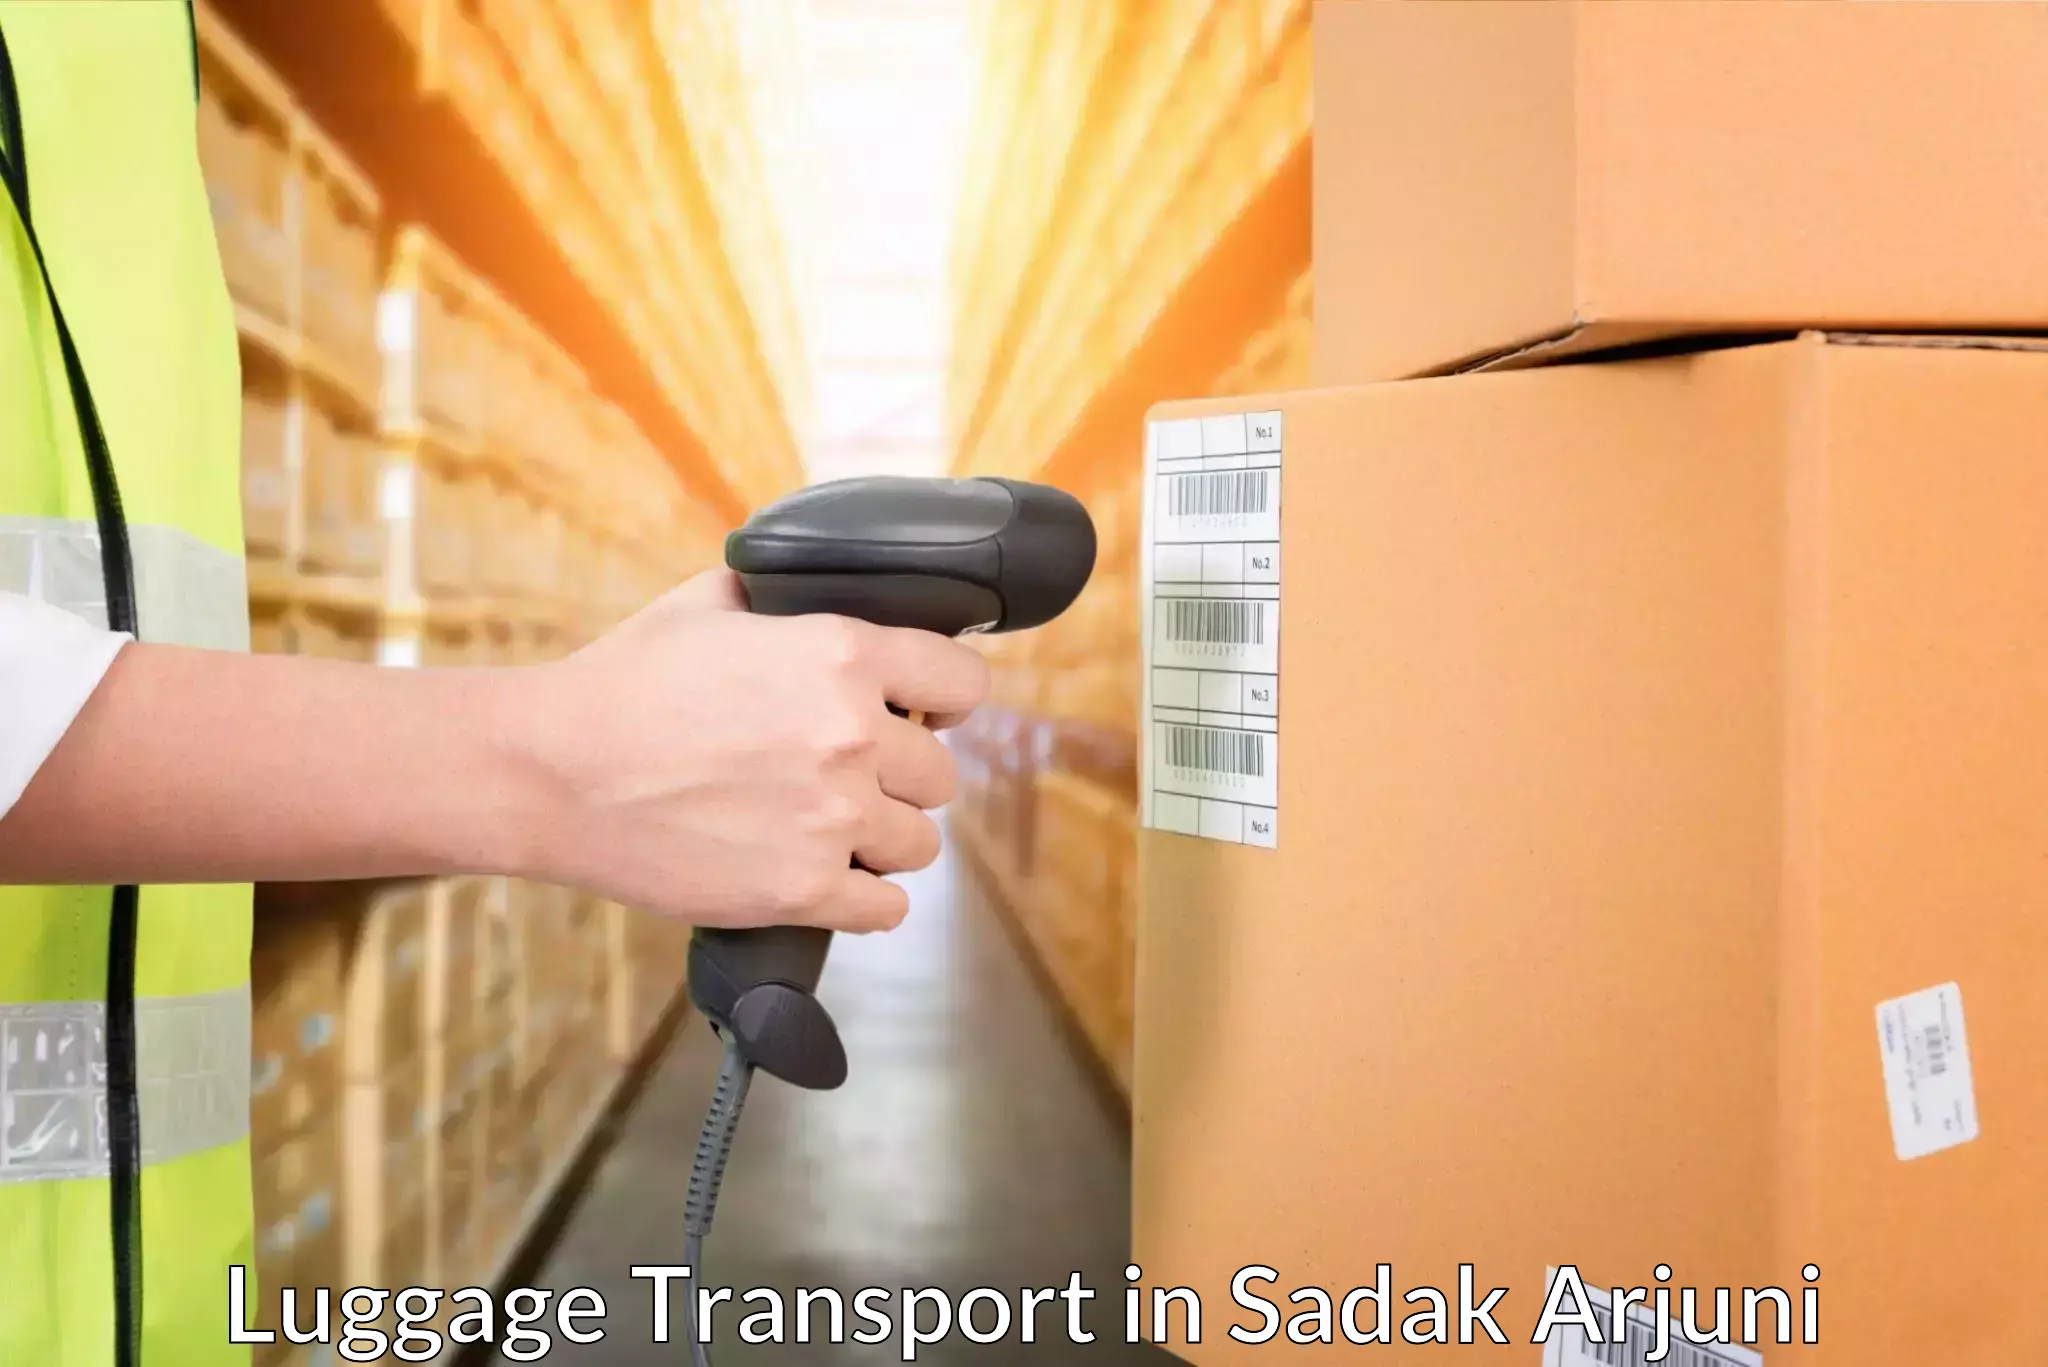 Hassle-free luggage shipping in Sadak Arjuni